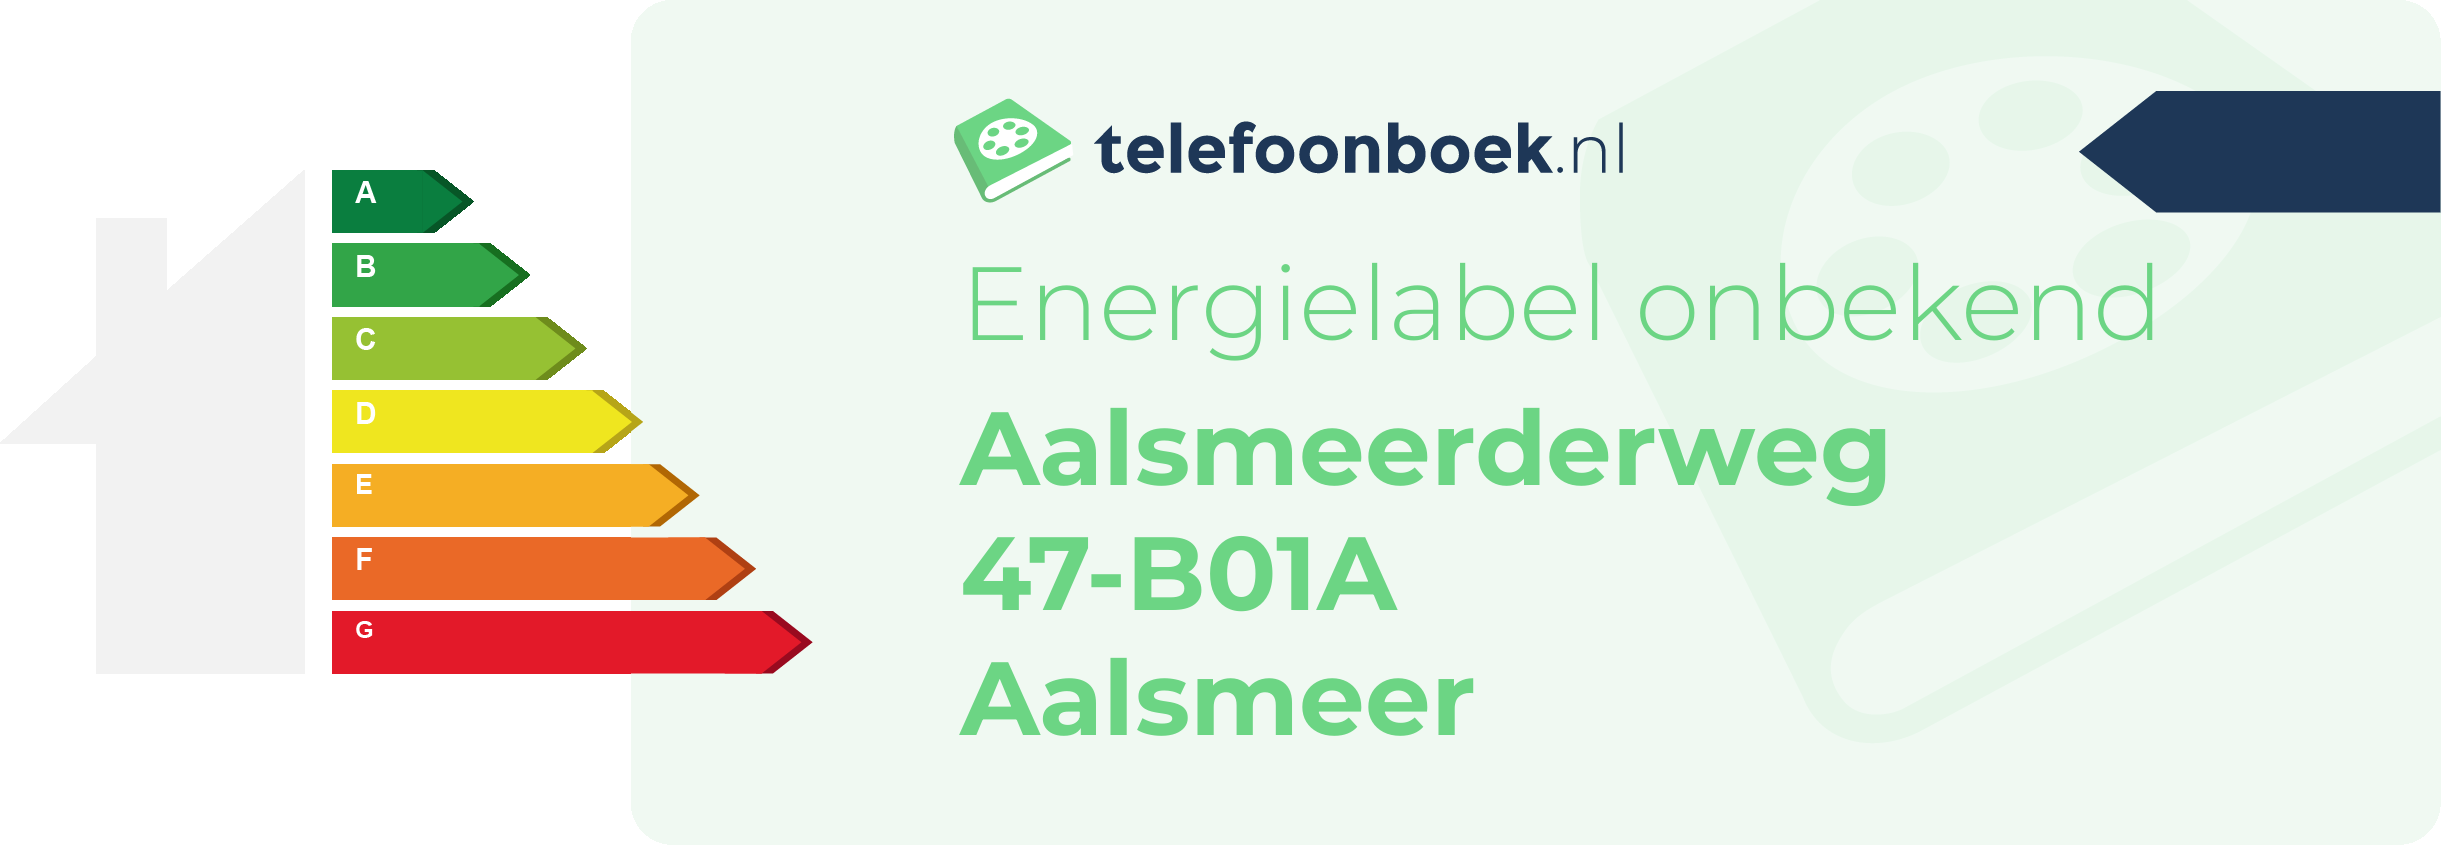 Energielabel Aalsmeerderweg 47-B01A Aalsmeer